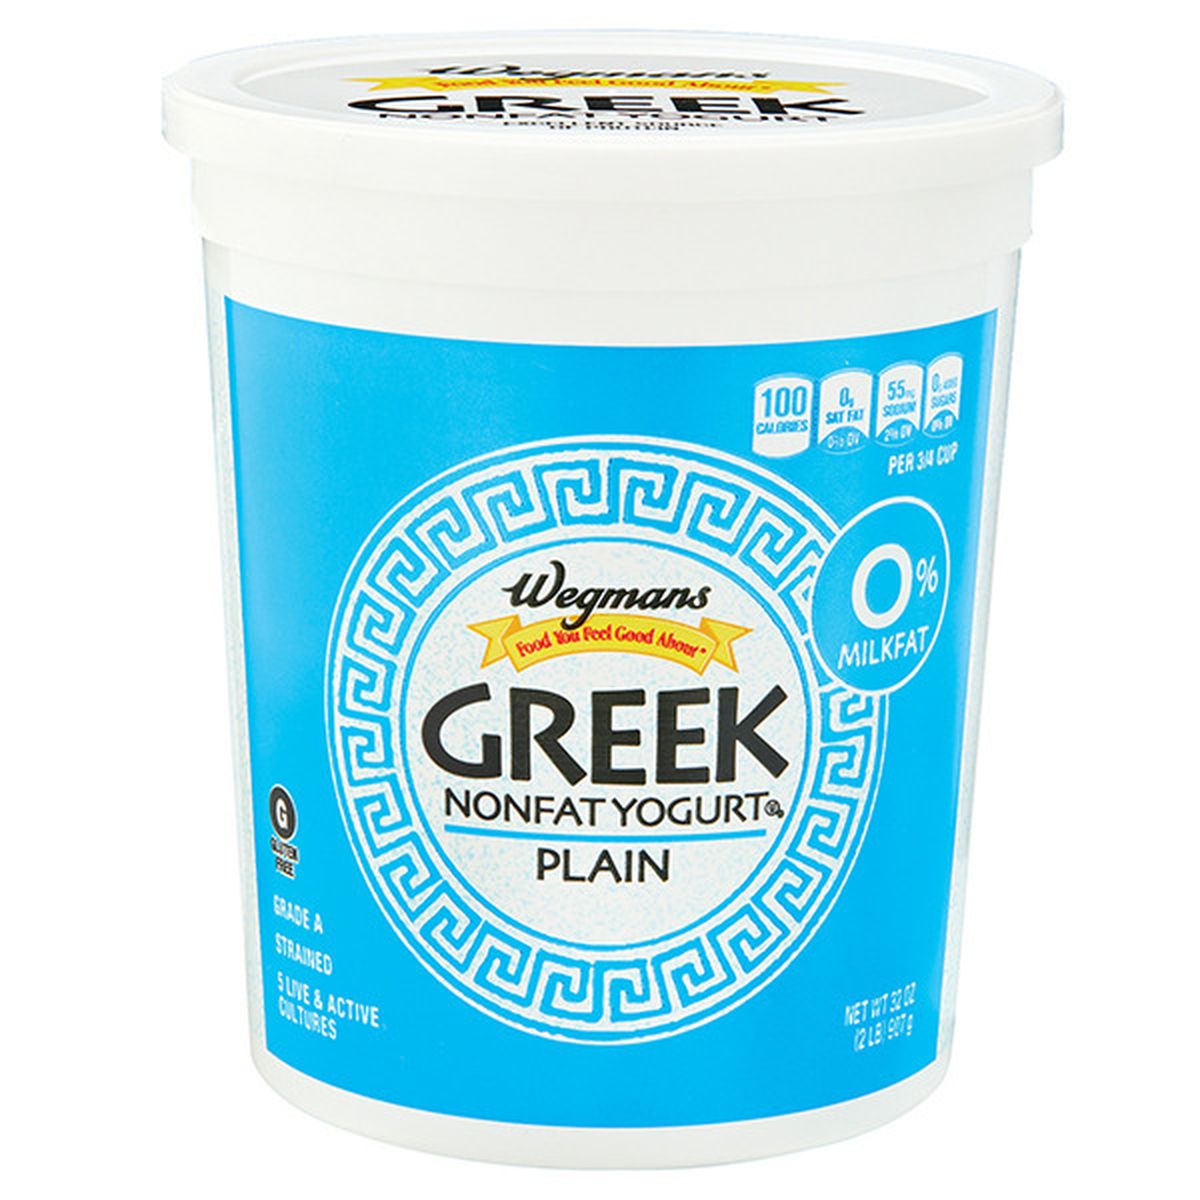 Calories in Wegmans Greek Plain Nonfat Yogurt